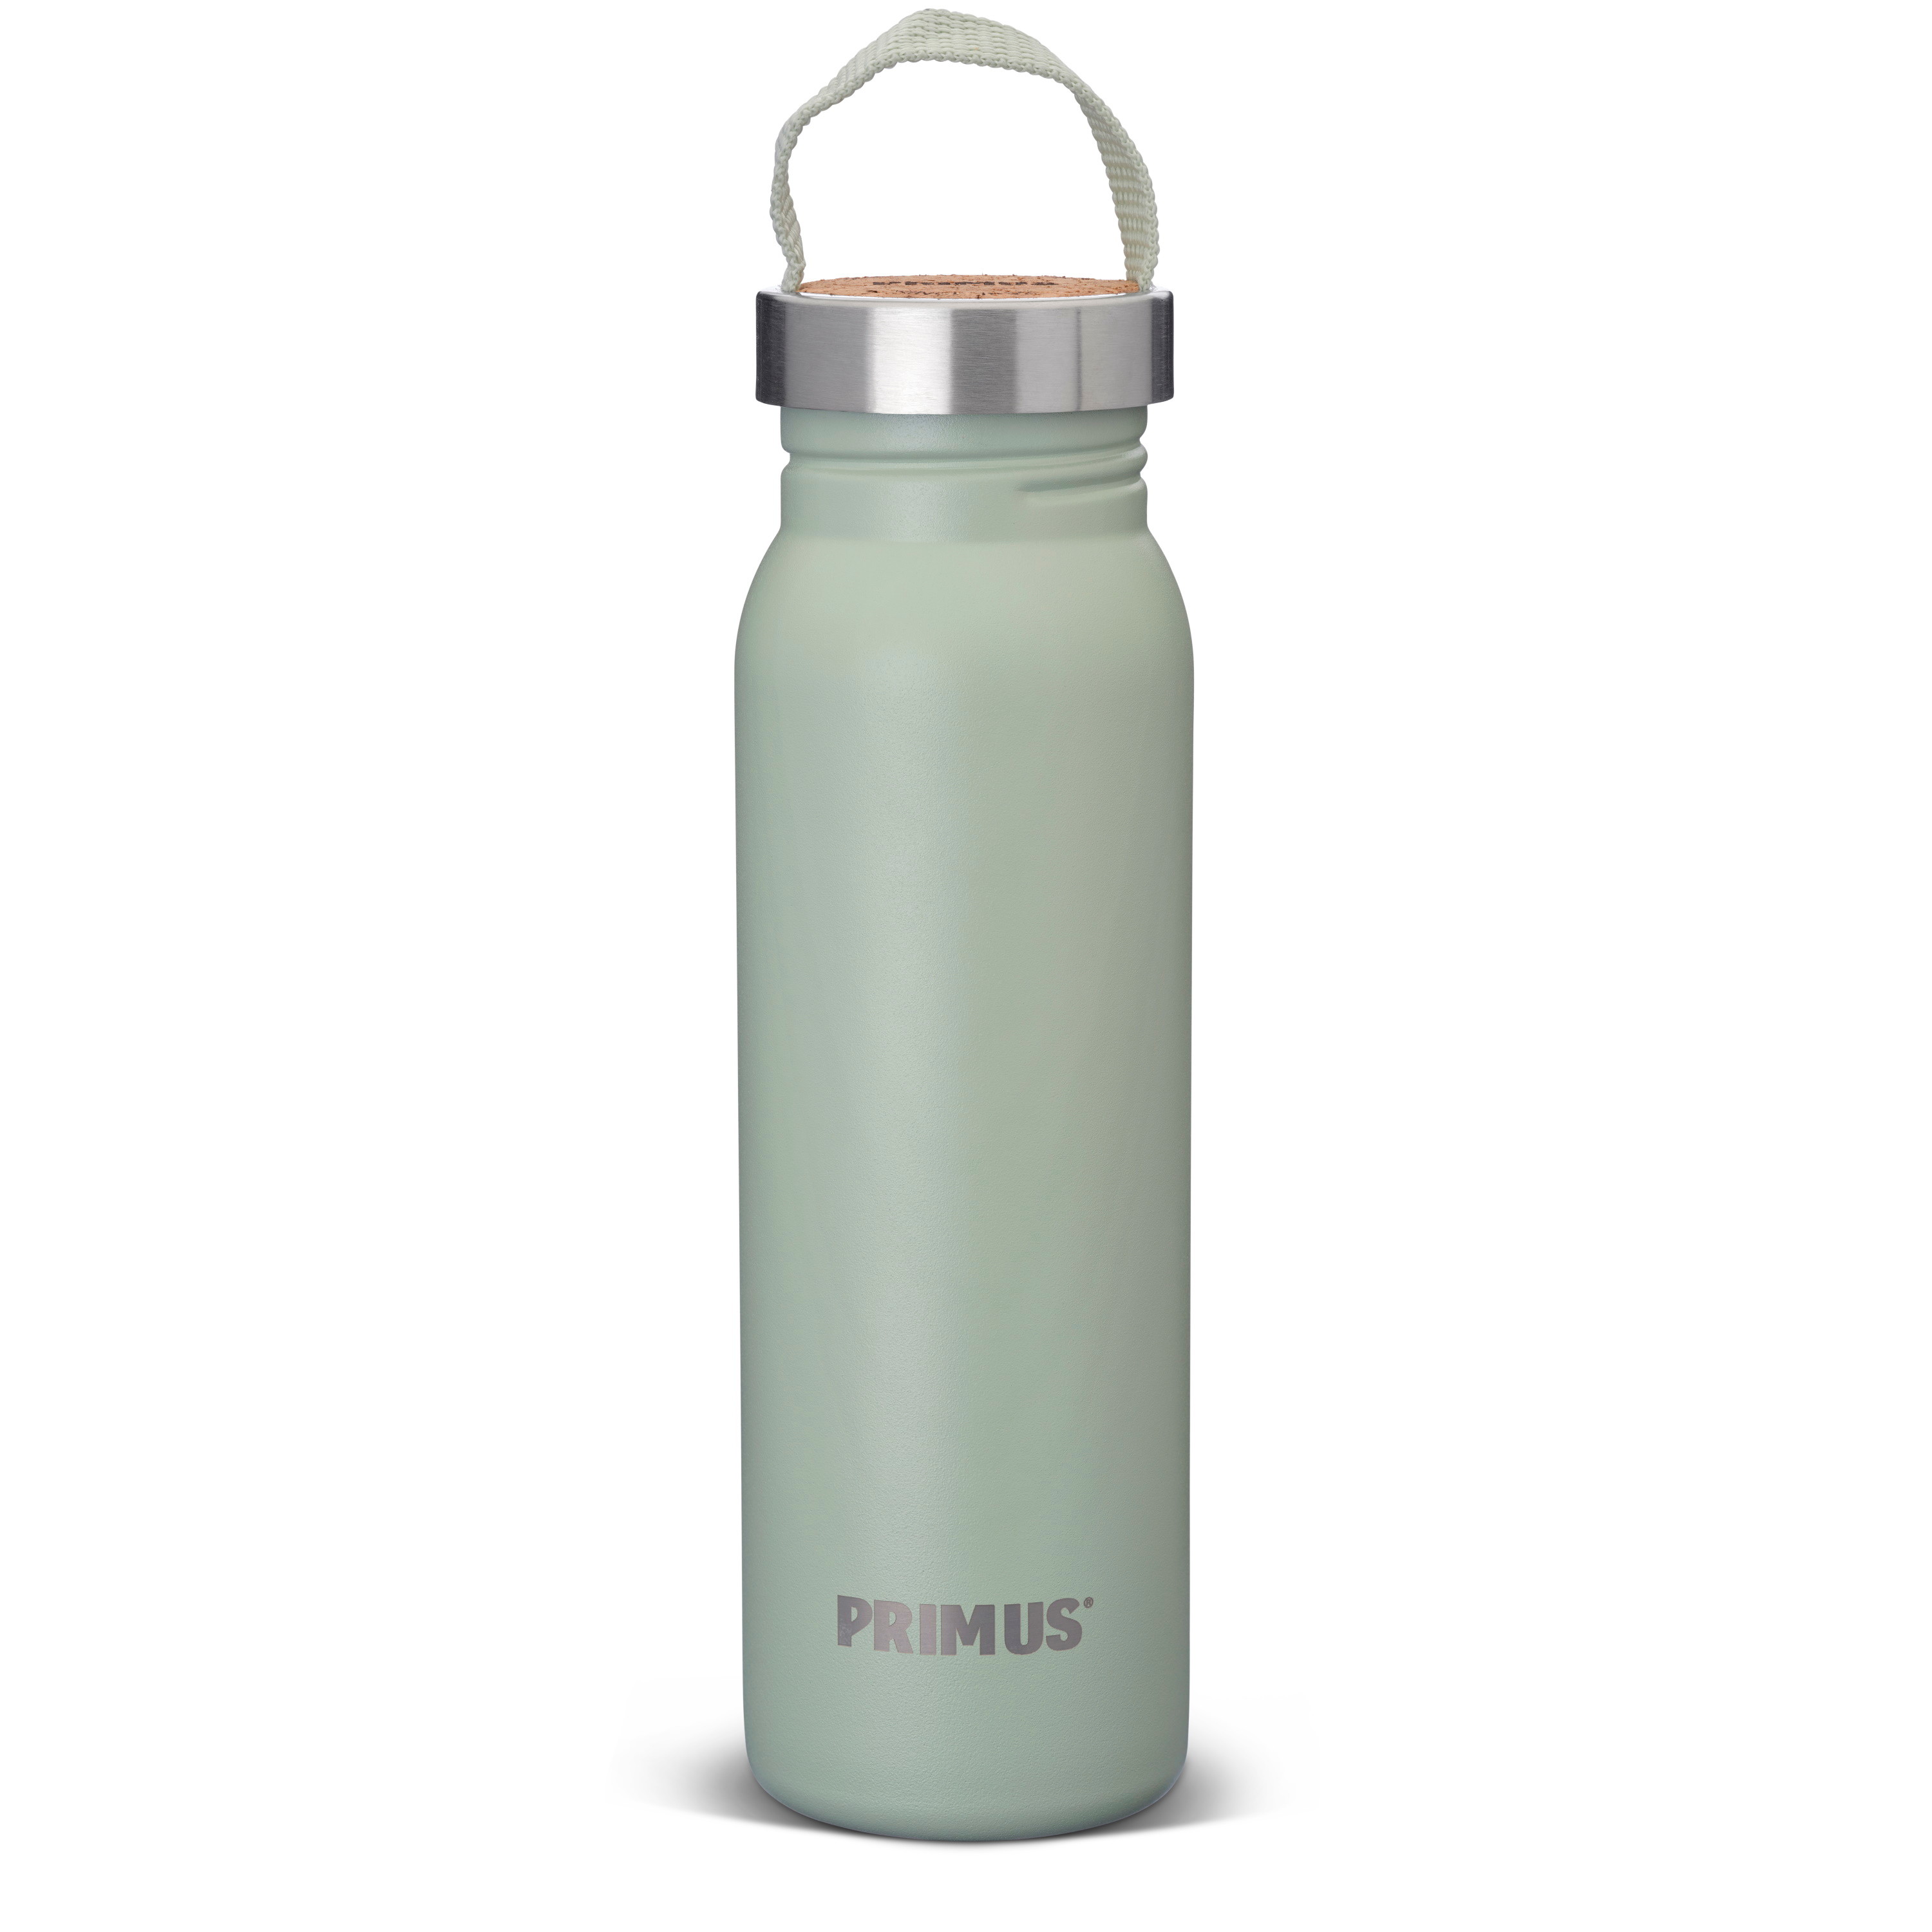 Primus Klunken Bottle 0.7 L Mint Green